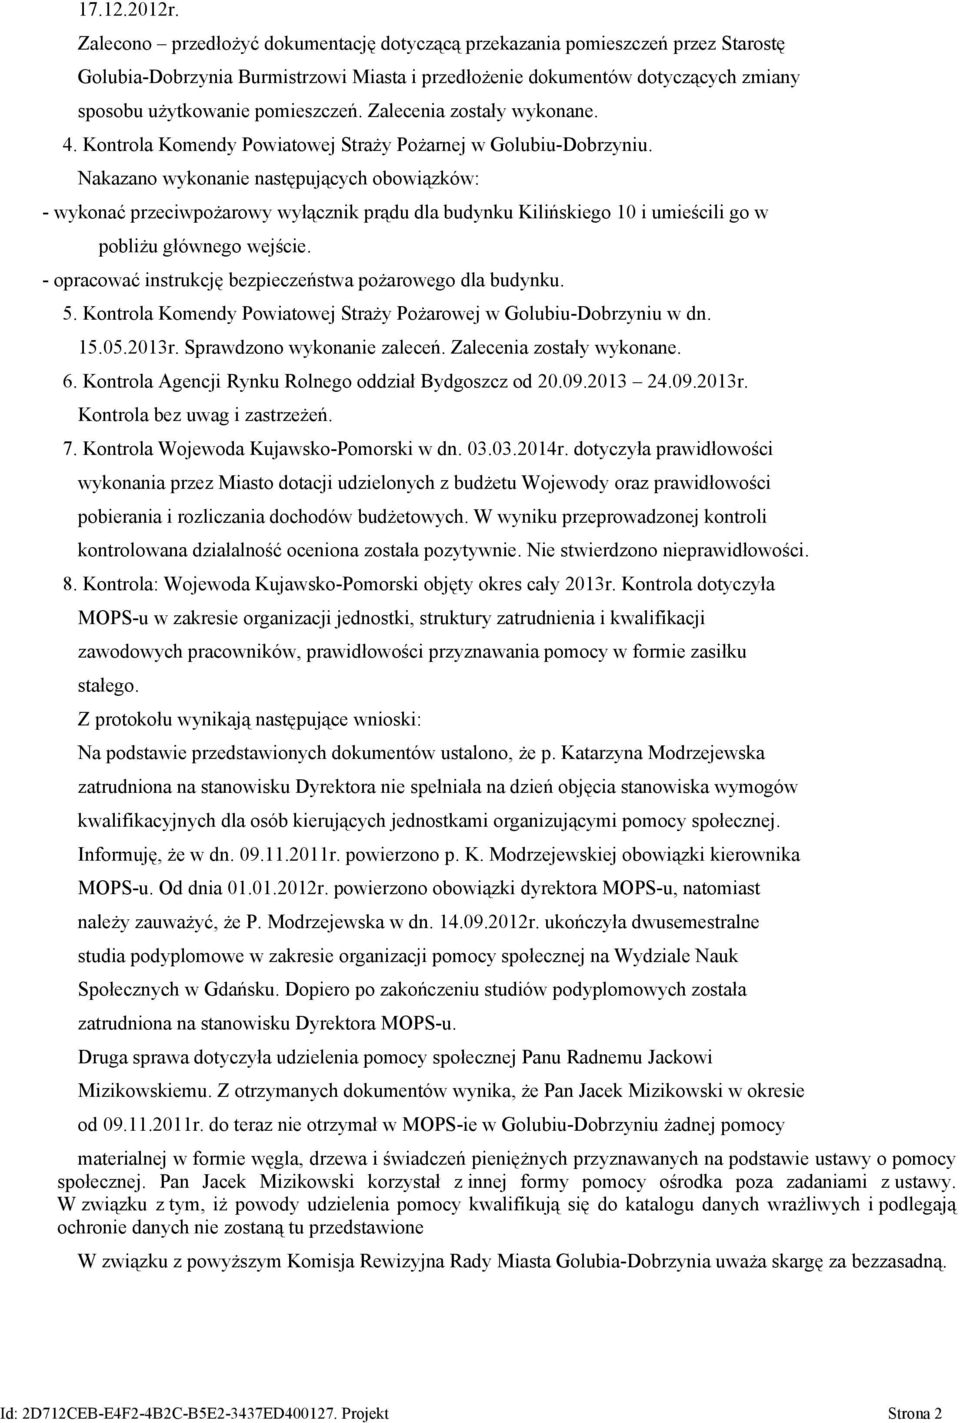 Zalecenia zostały wykonane. 4. Kontrola Komendy Powiatowej Straży Pożarnej w Golubiu-Dobrzyniu.